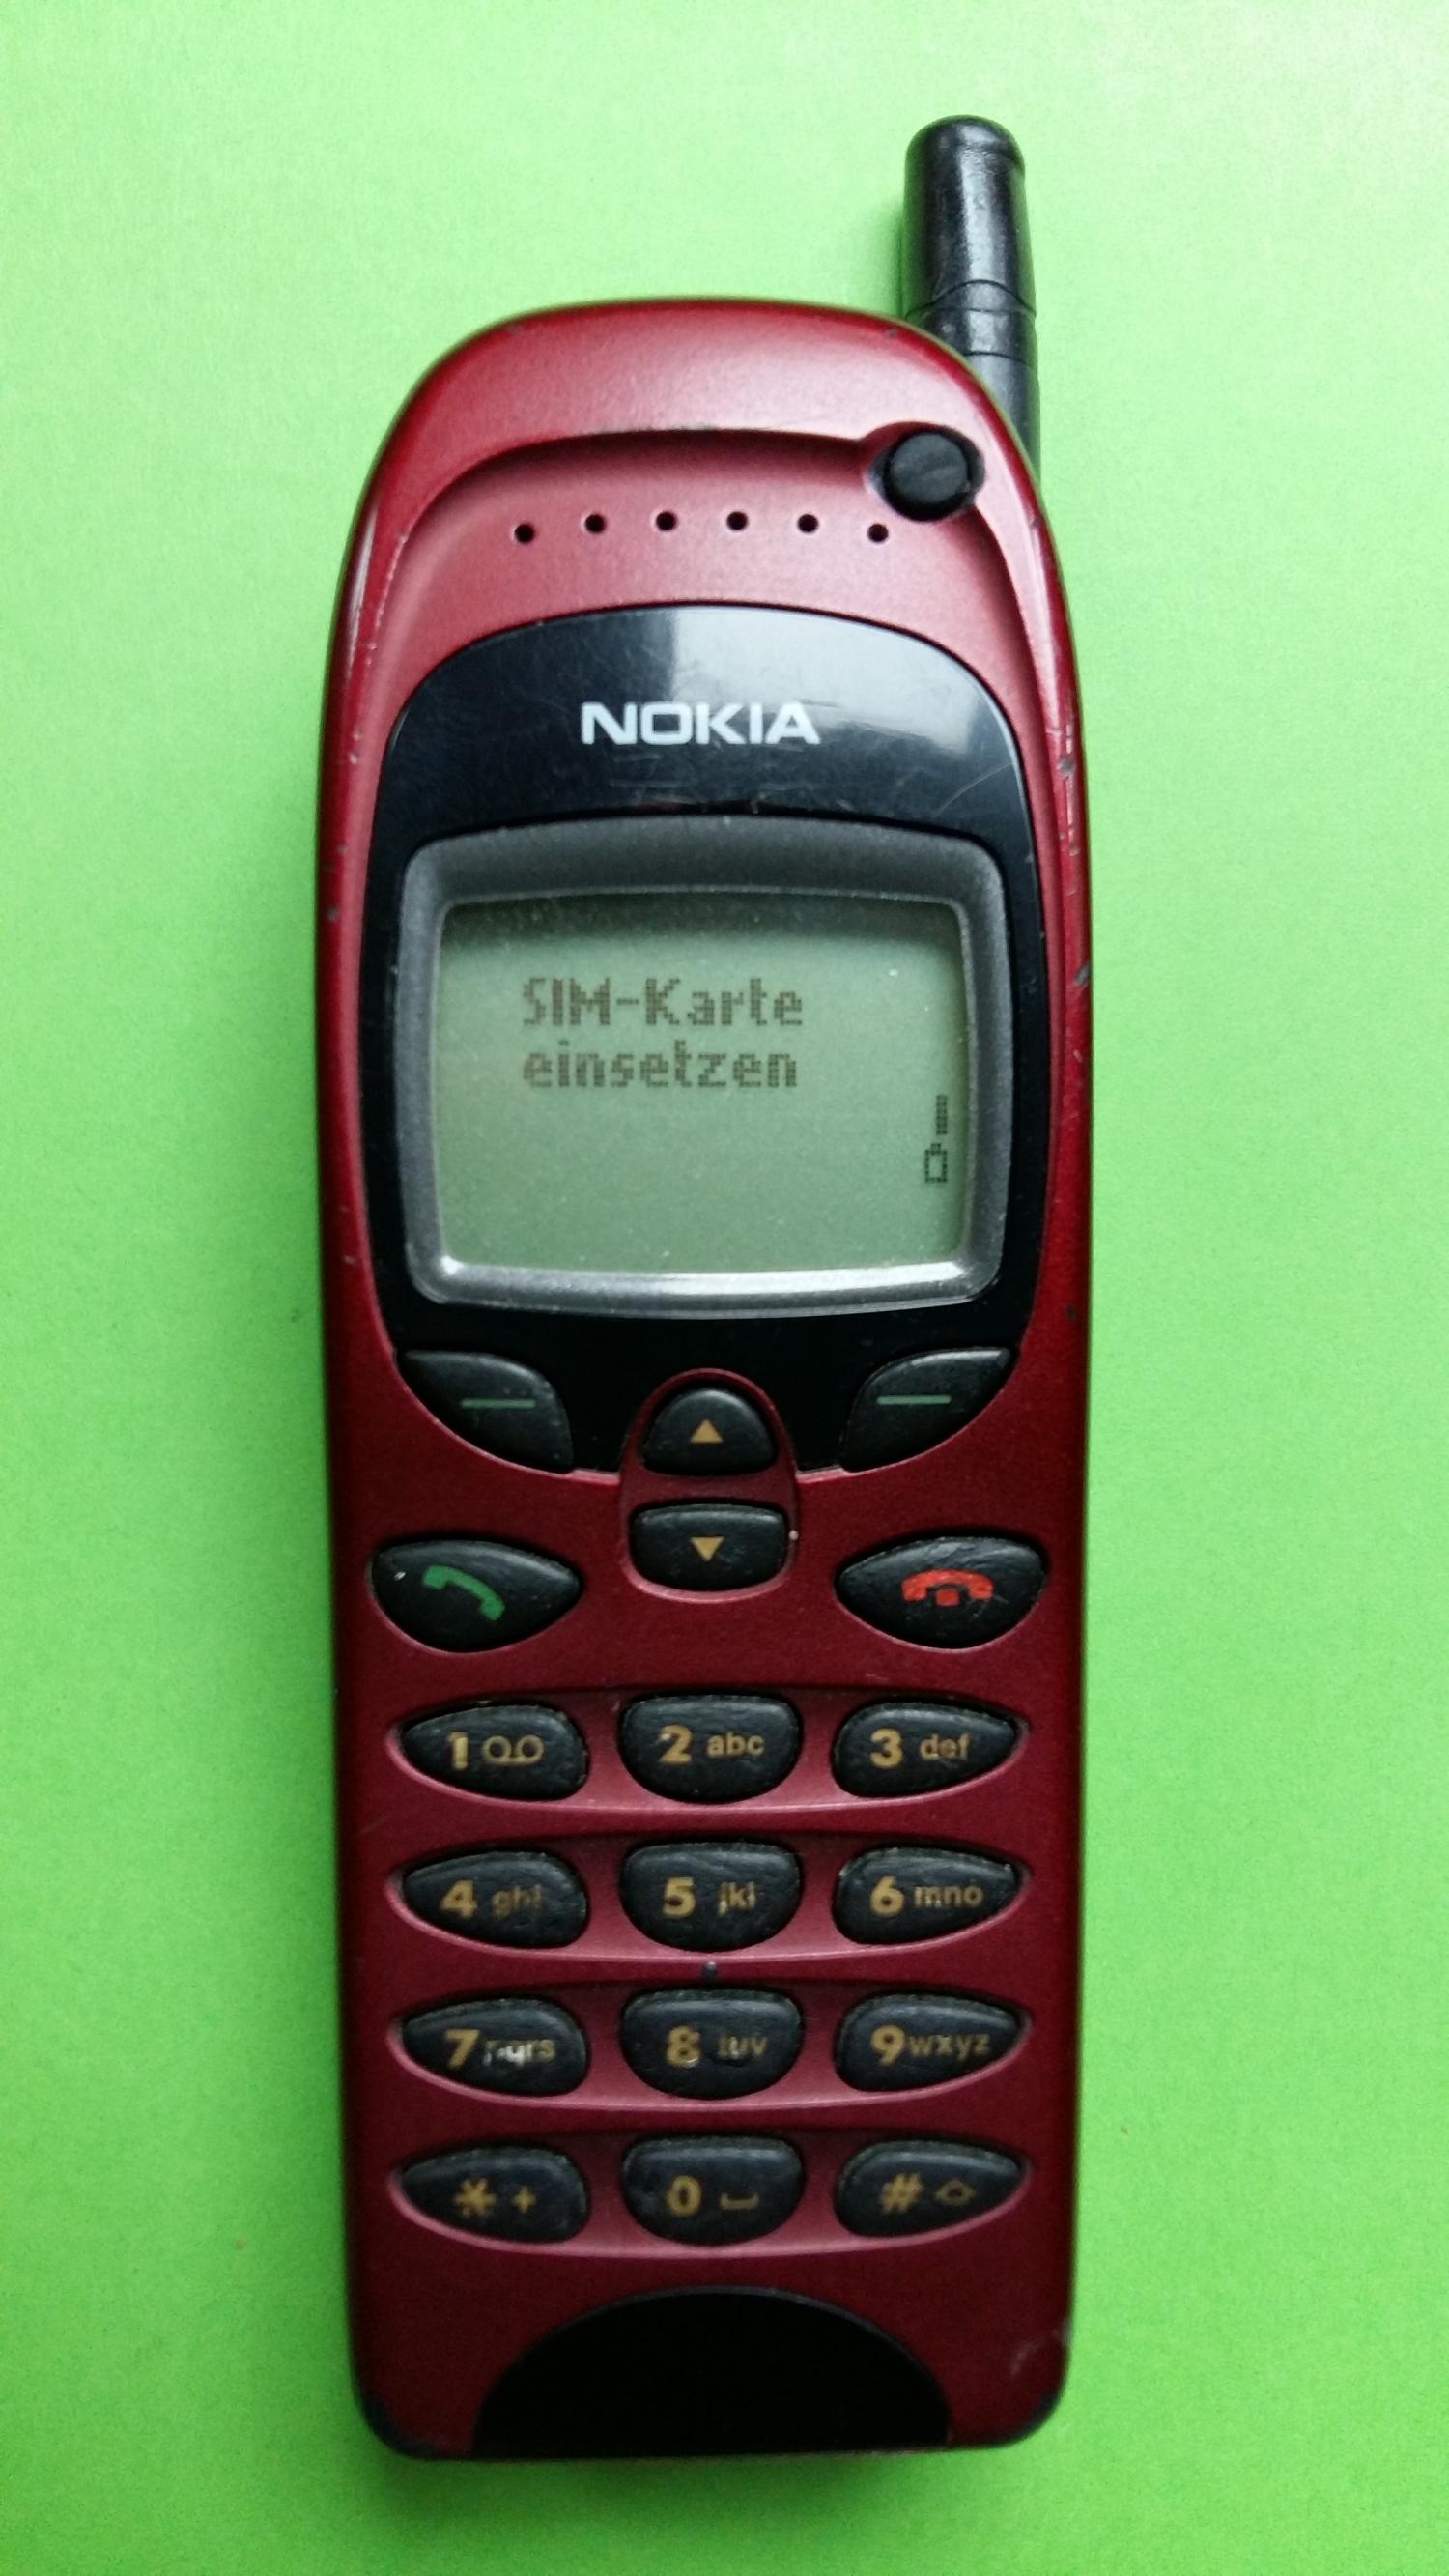 image-7307638-Nokia 6150 (7)1.jpg